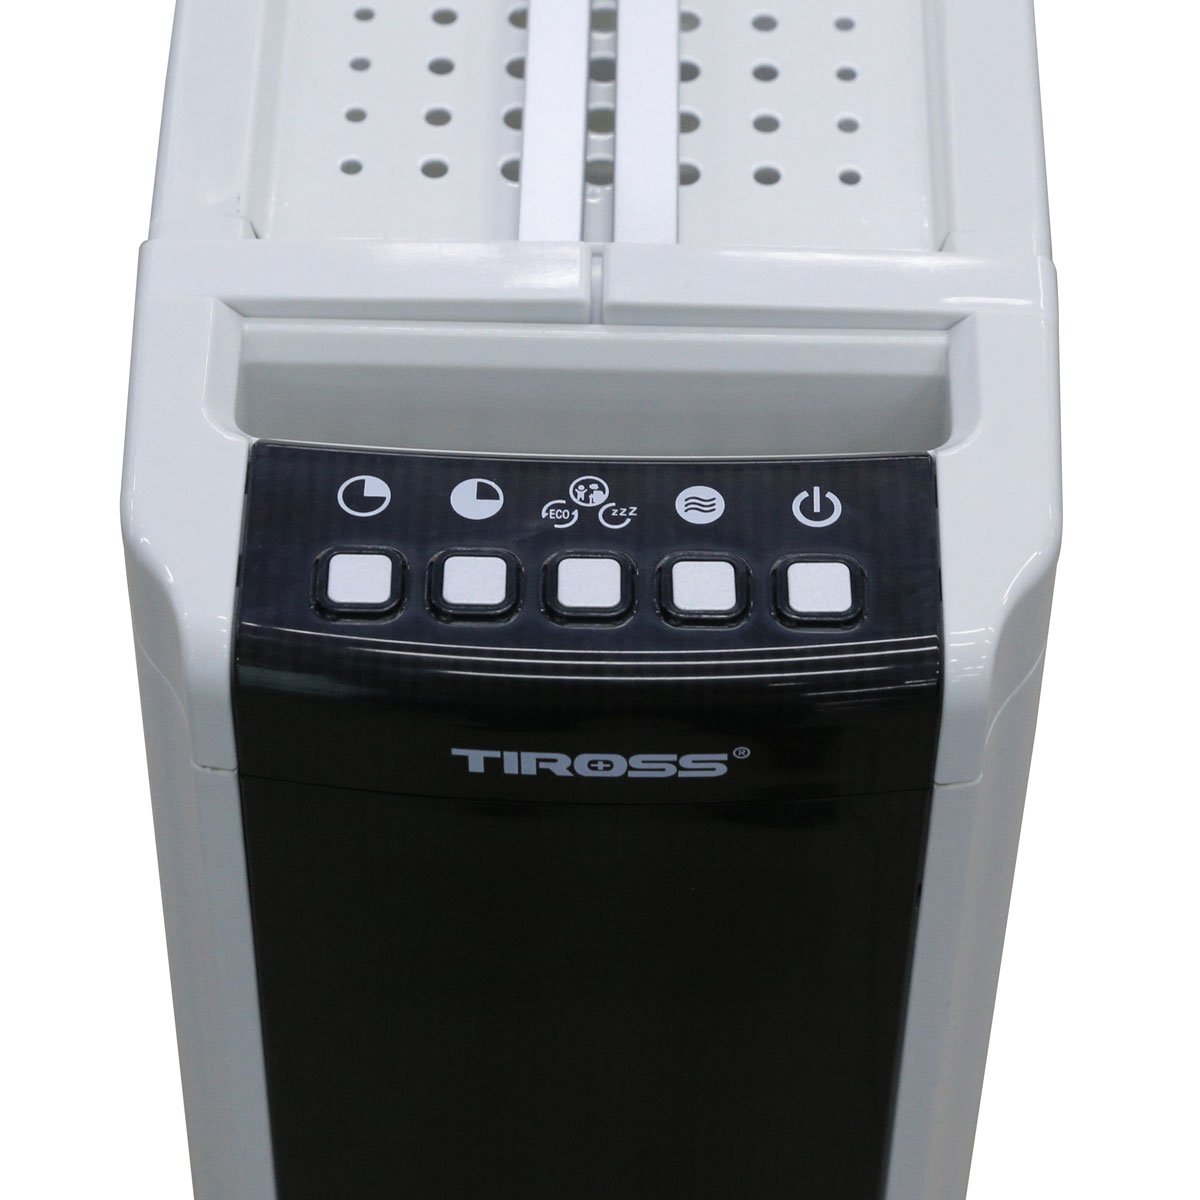 Máy sưởi dầu Tiross TS9213 13 thanh, màn hình LED, hẹn giờ, điều khiển, giá phơi